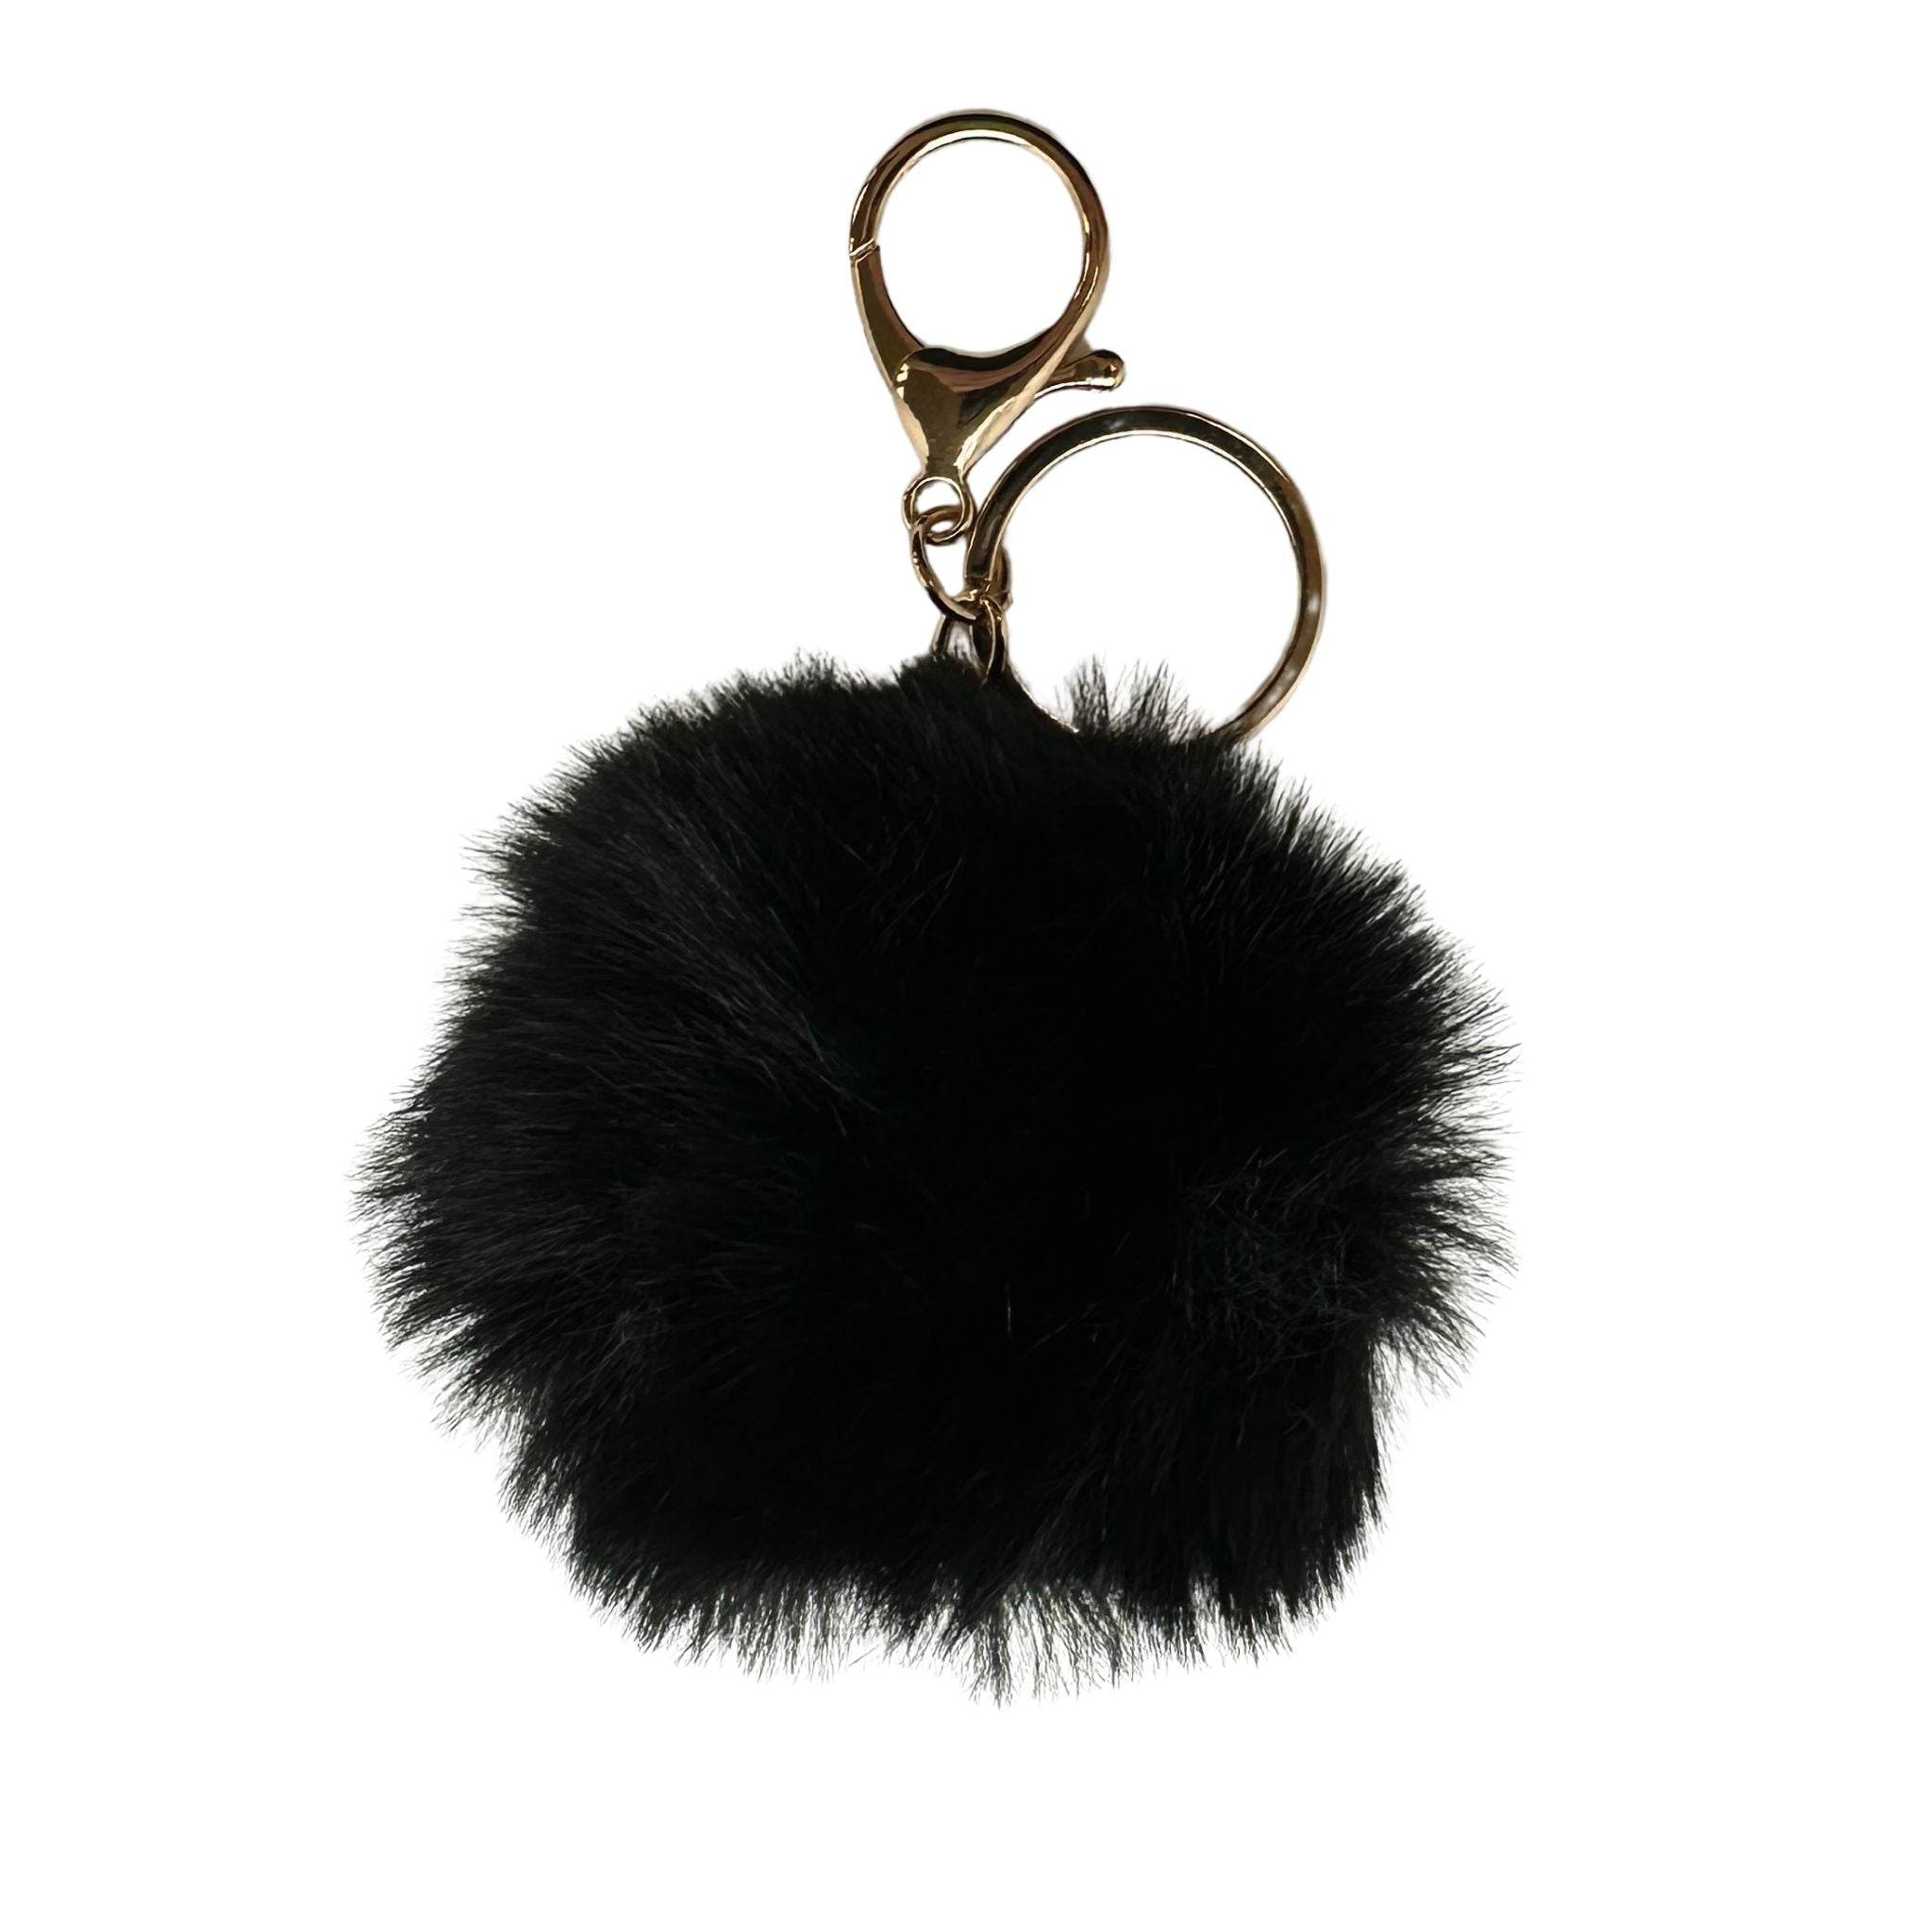 Faux Fur Pom Pom Keychain - Black